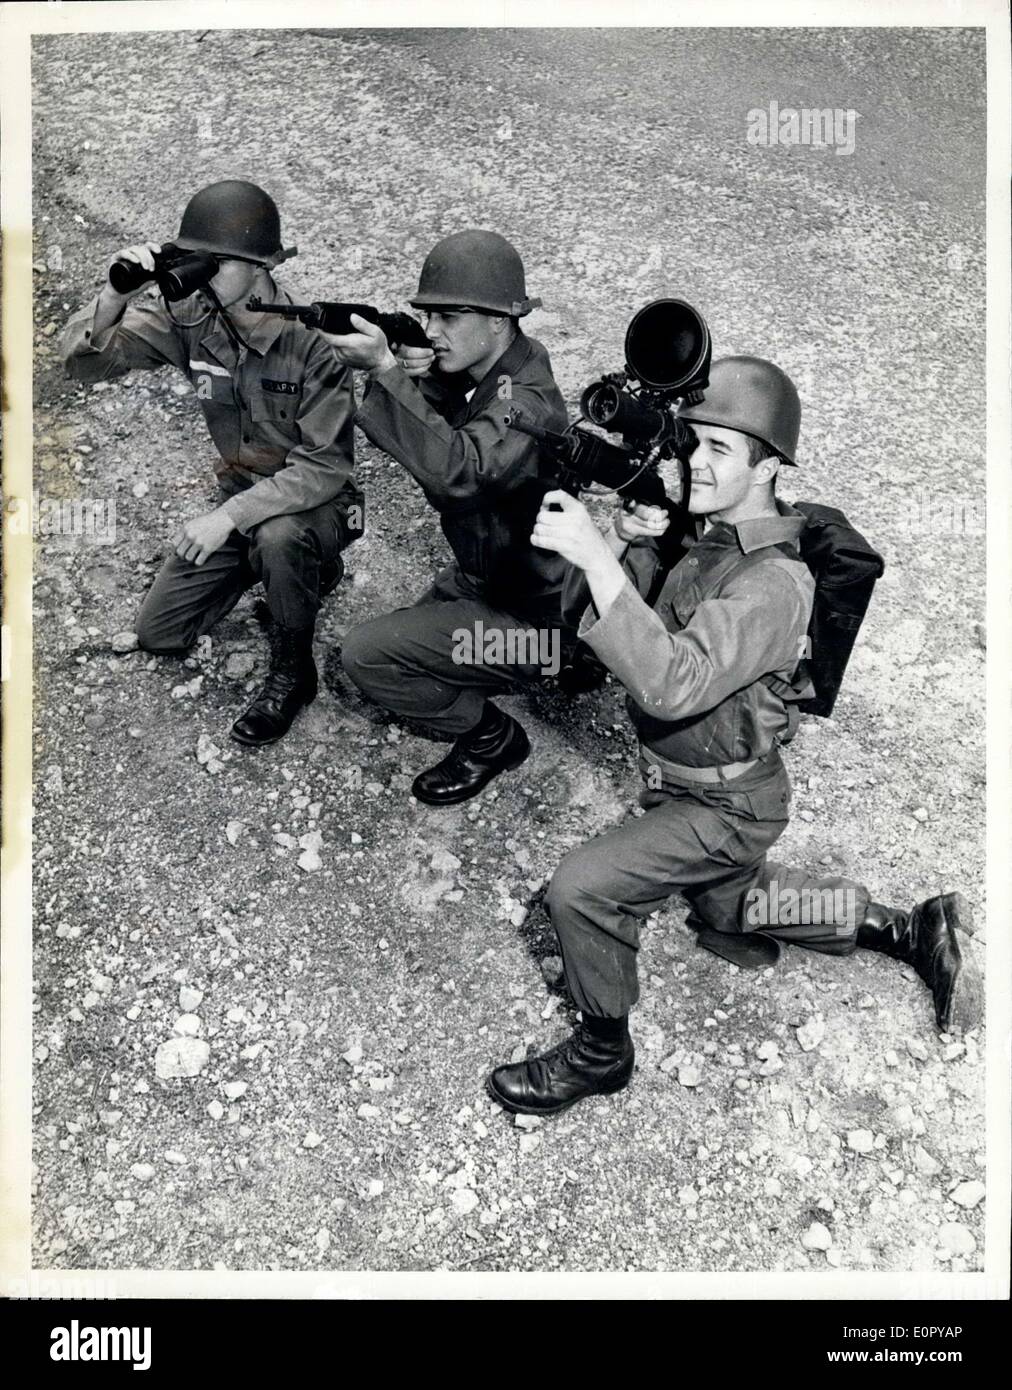 27. Juni 1957 - Bekämpfung Bau Poler - die neue Sniperscope, eine verbesserte Version der Gheatly der Nacht Anzeige Gerät erstmals während der späten Stadien von Zweiter Weltkrieg, gibt der Fußsoldat rund um die Uhr gegen Schlag. Es ist eine konventionelle Gewehr und Supersedes Gebrauch der Ferngläser und schmucklose Rifie nachts beigefügt. Stockfoto